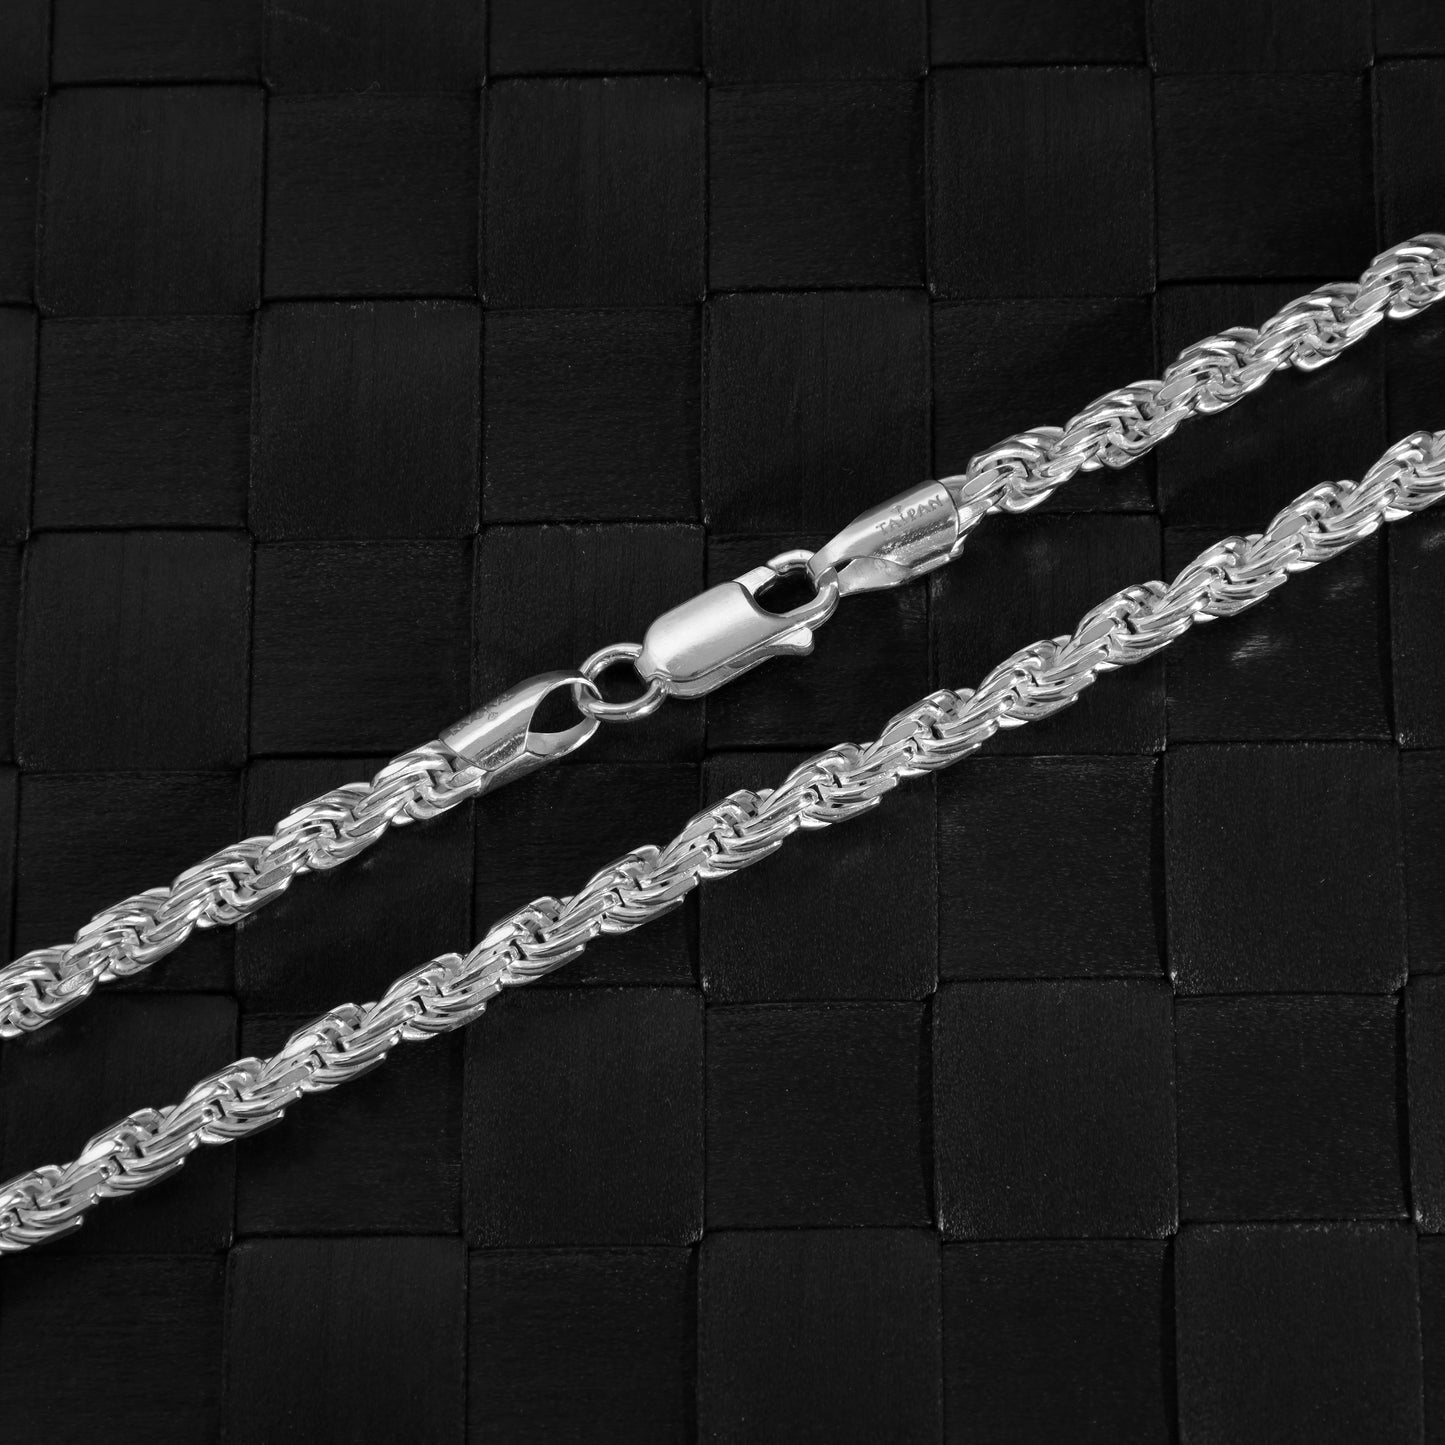 Kordelkette Rope Chain 2,3mm breit 42cm lang massiv 925 Sterling Silber (K1021)